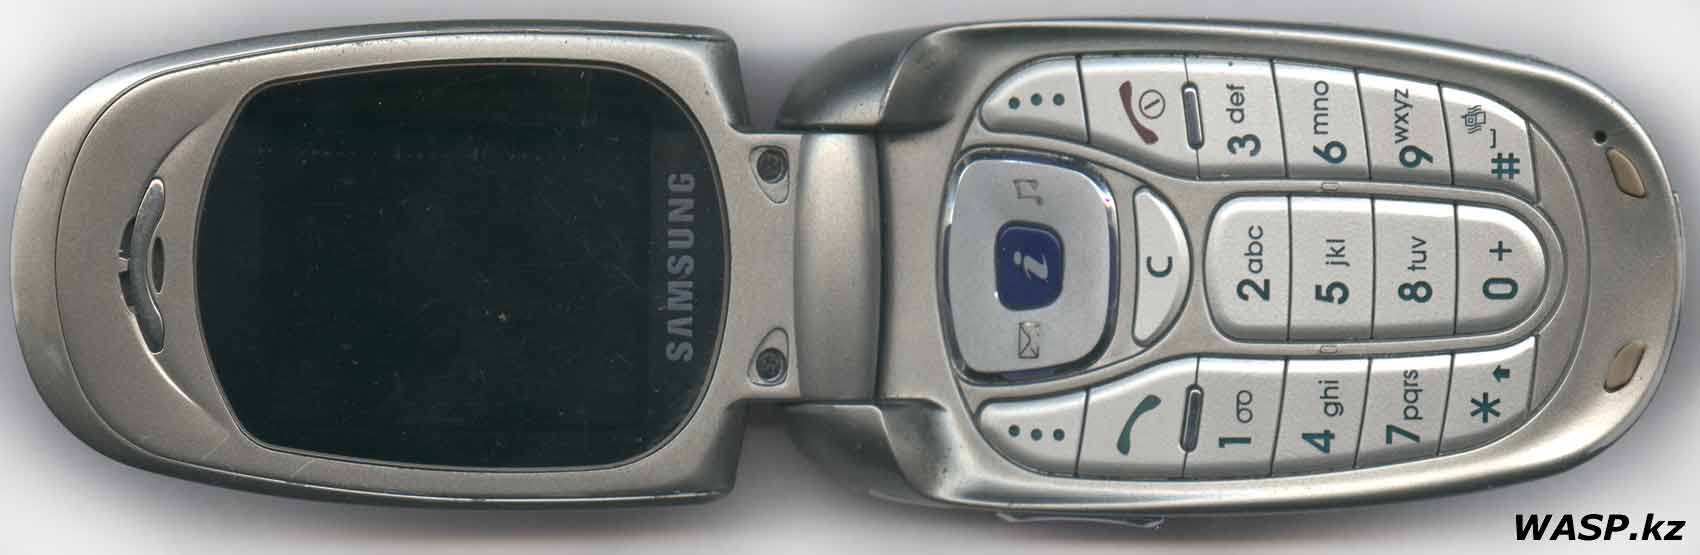 Samsung SGH-X480 обзор сотового телефона